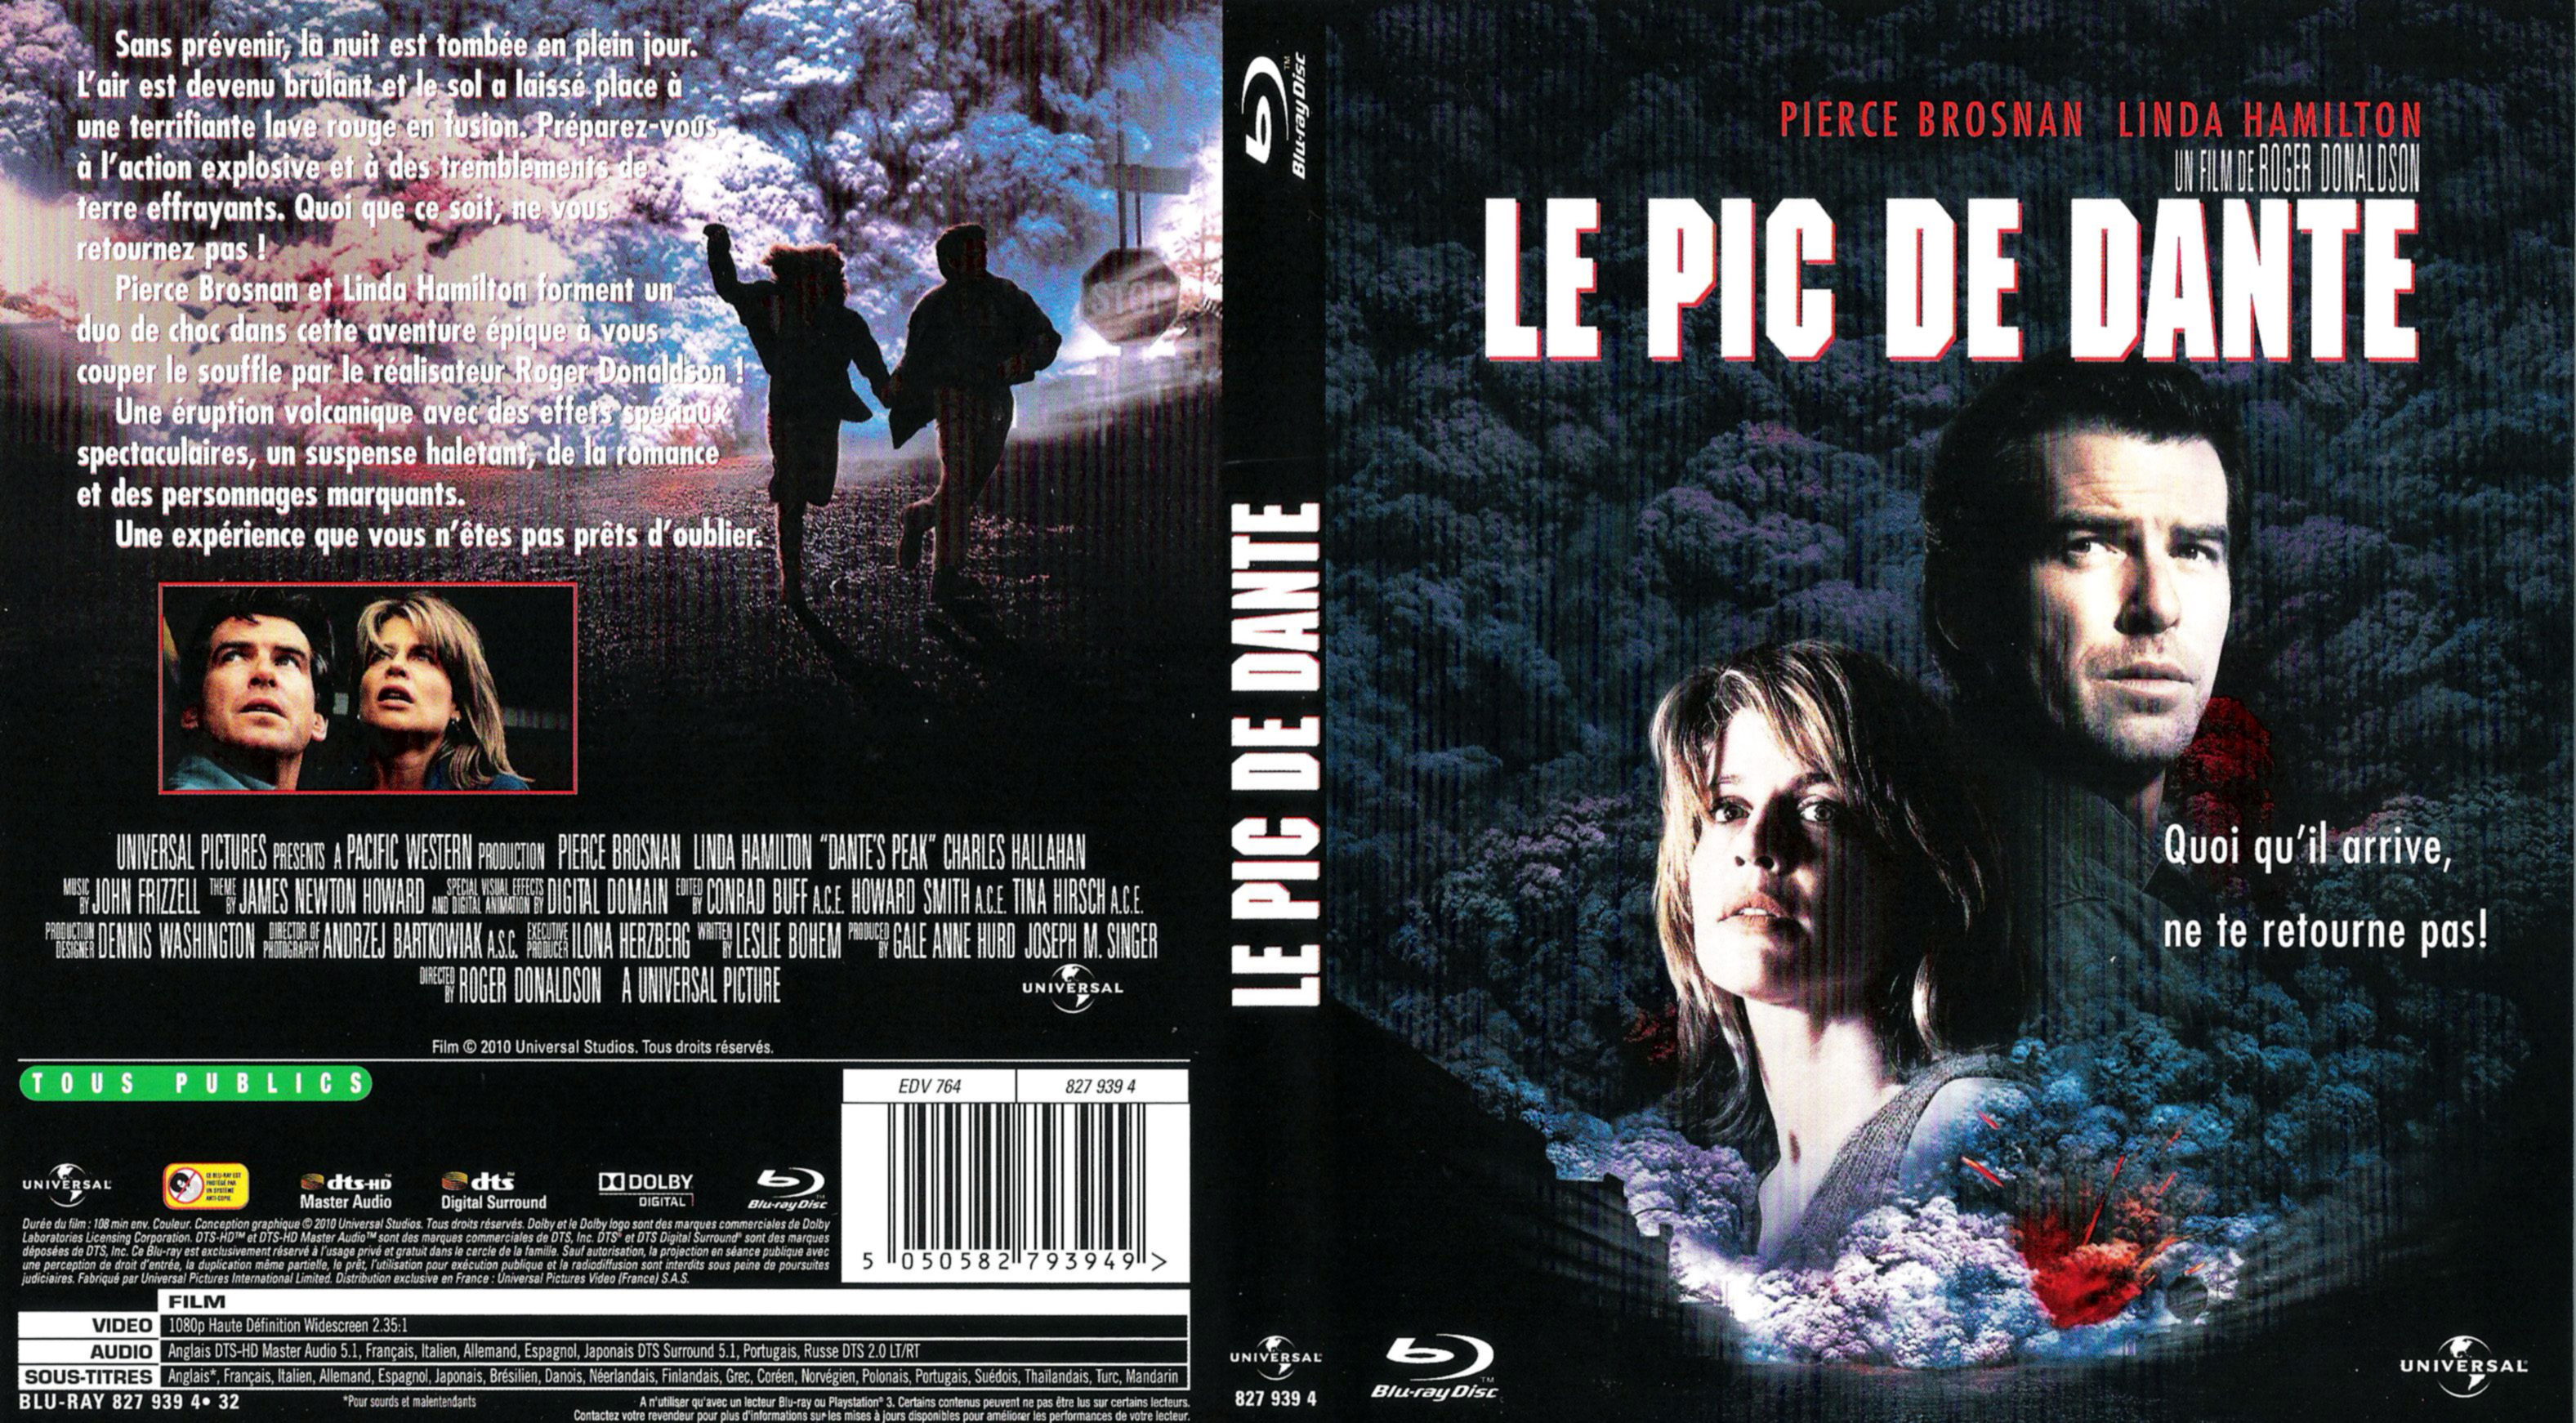 Jaquette DVD Le pic de dante (BLU-RAY)